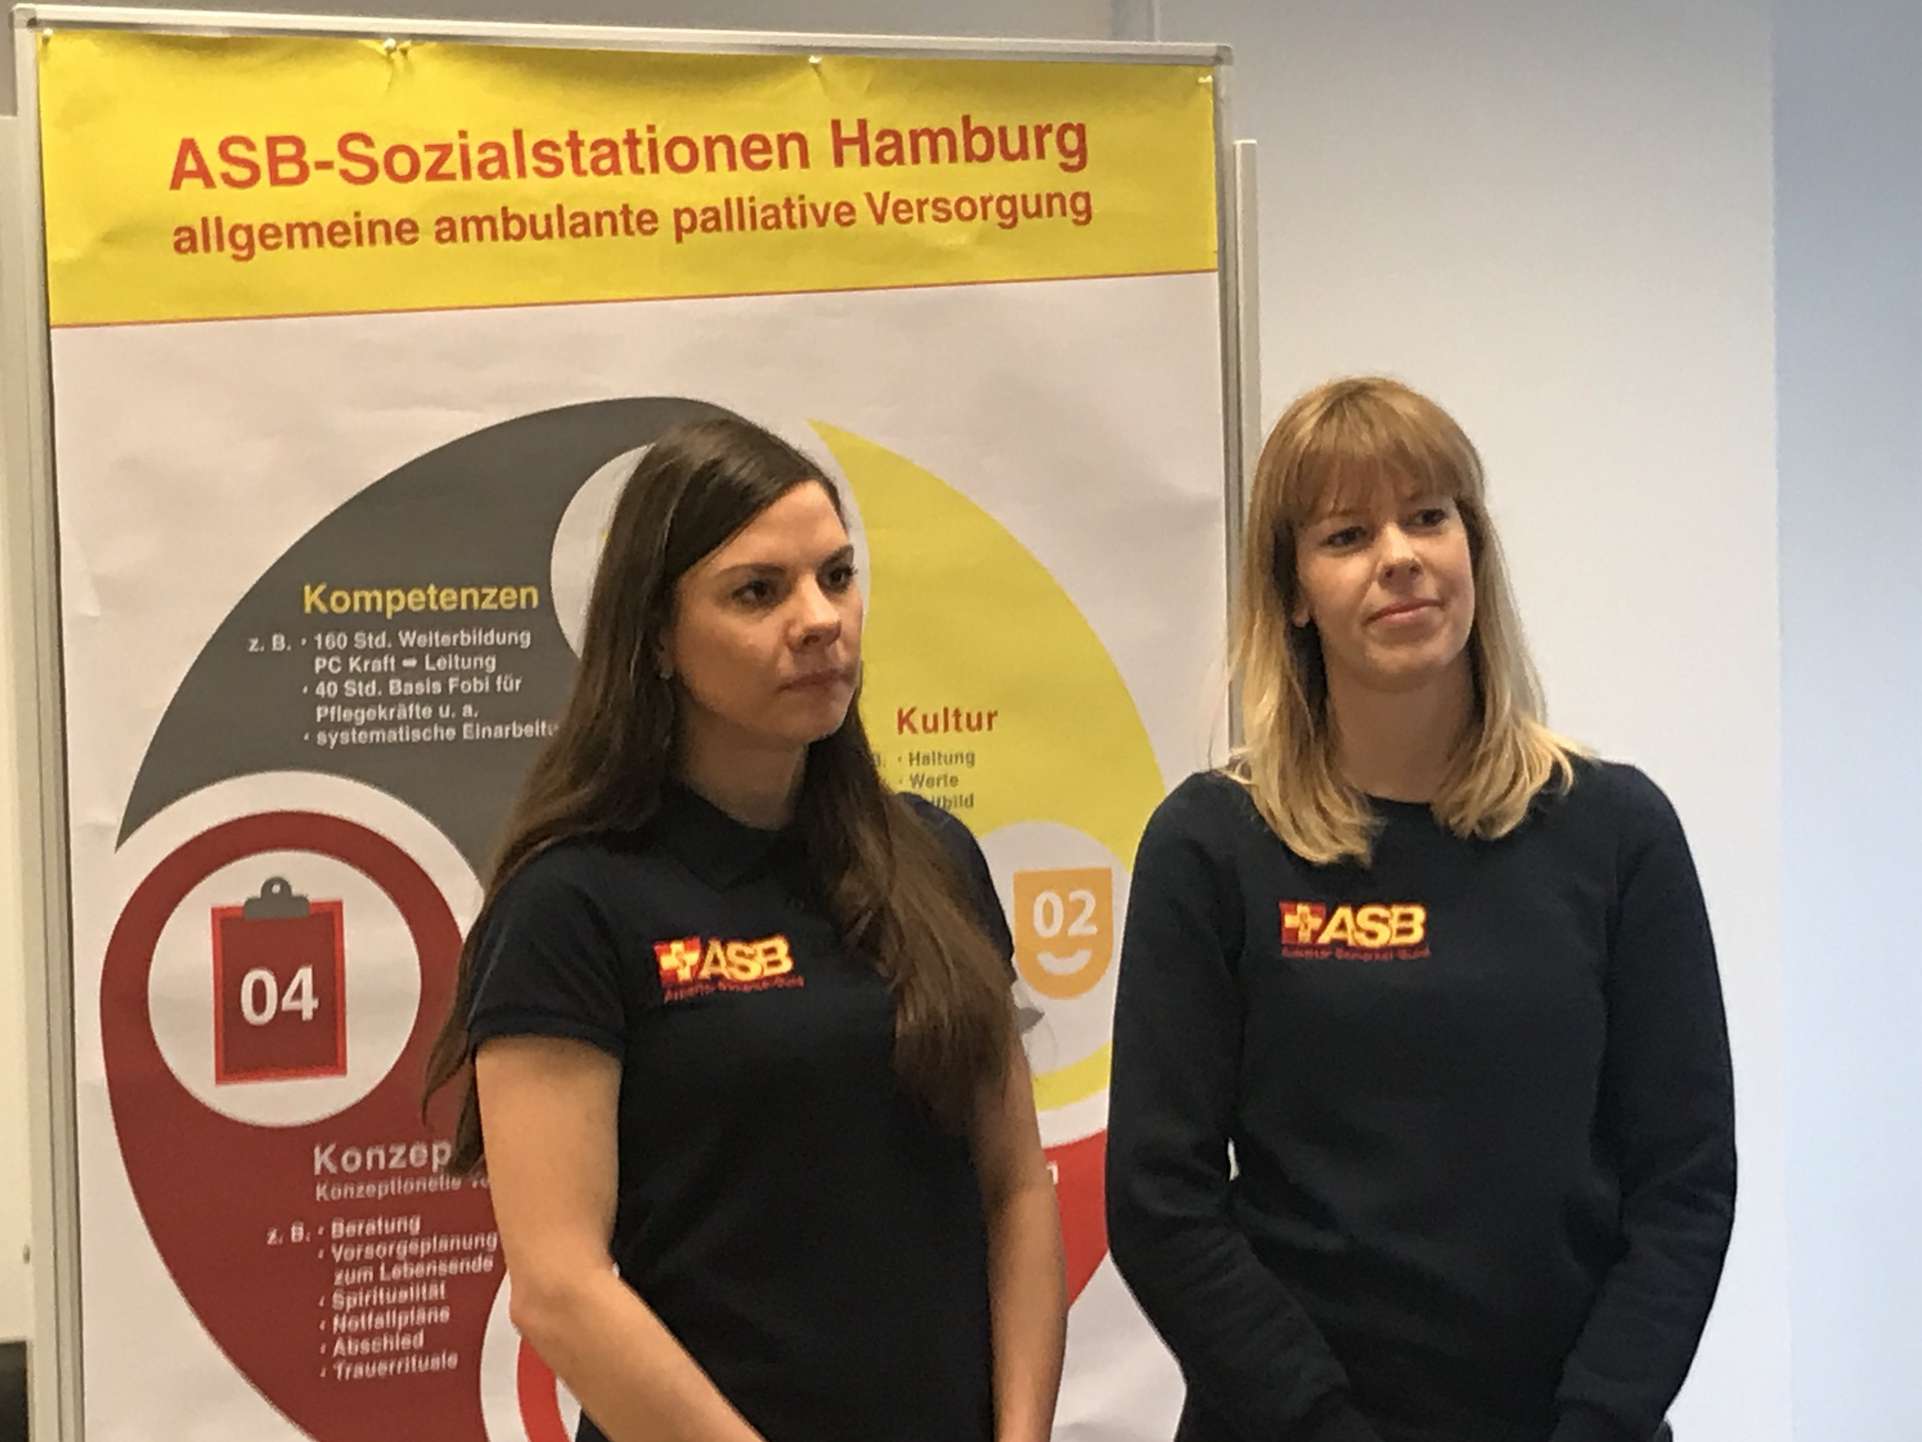 Die Pflegefachkräfte des ASB Hamburg Nadine Tjessem (links) und Svenja Jacobsen (rechts) sind speziell ausgebildet im Bereich der ambulanten Palliativversorgung und bieten regelmäßig Letzte-Hilfe-Kurse an. Foto ASB Hamburg / P. Witt.